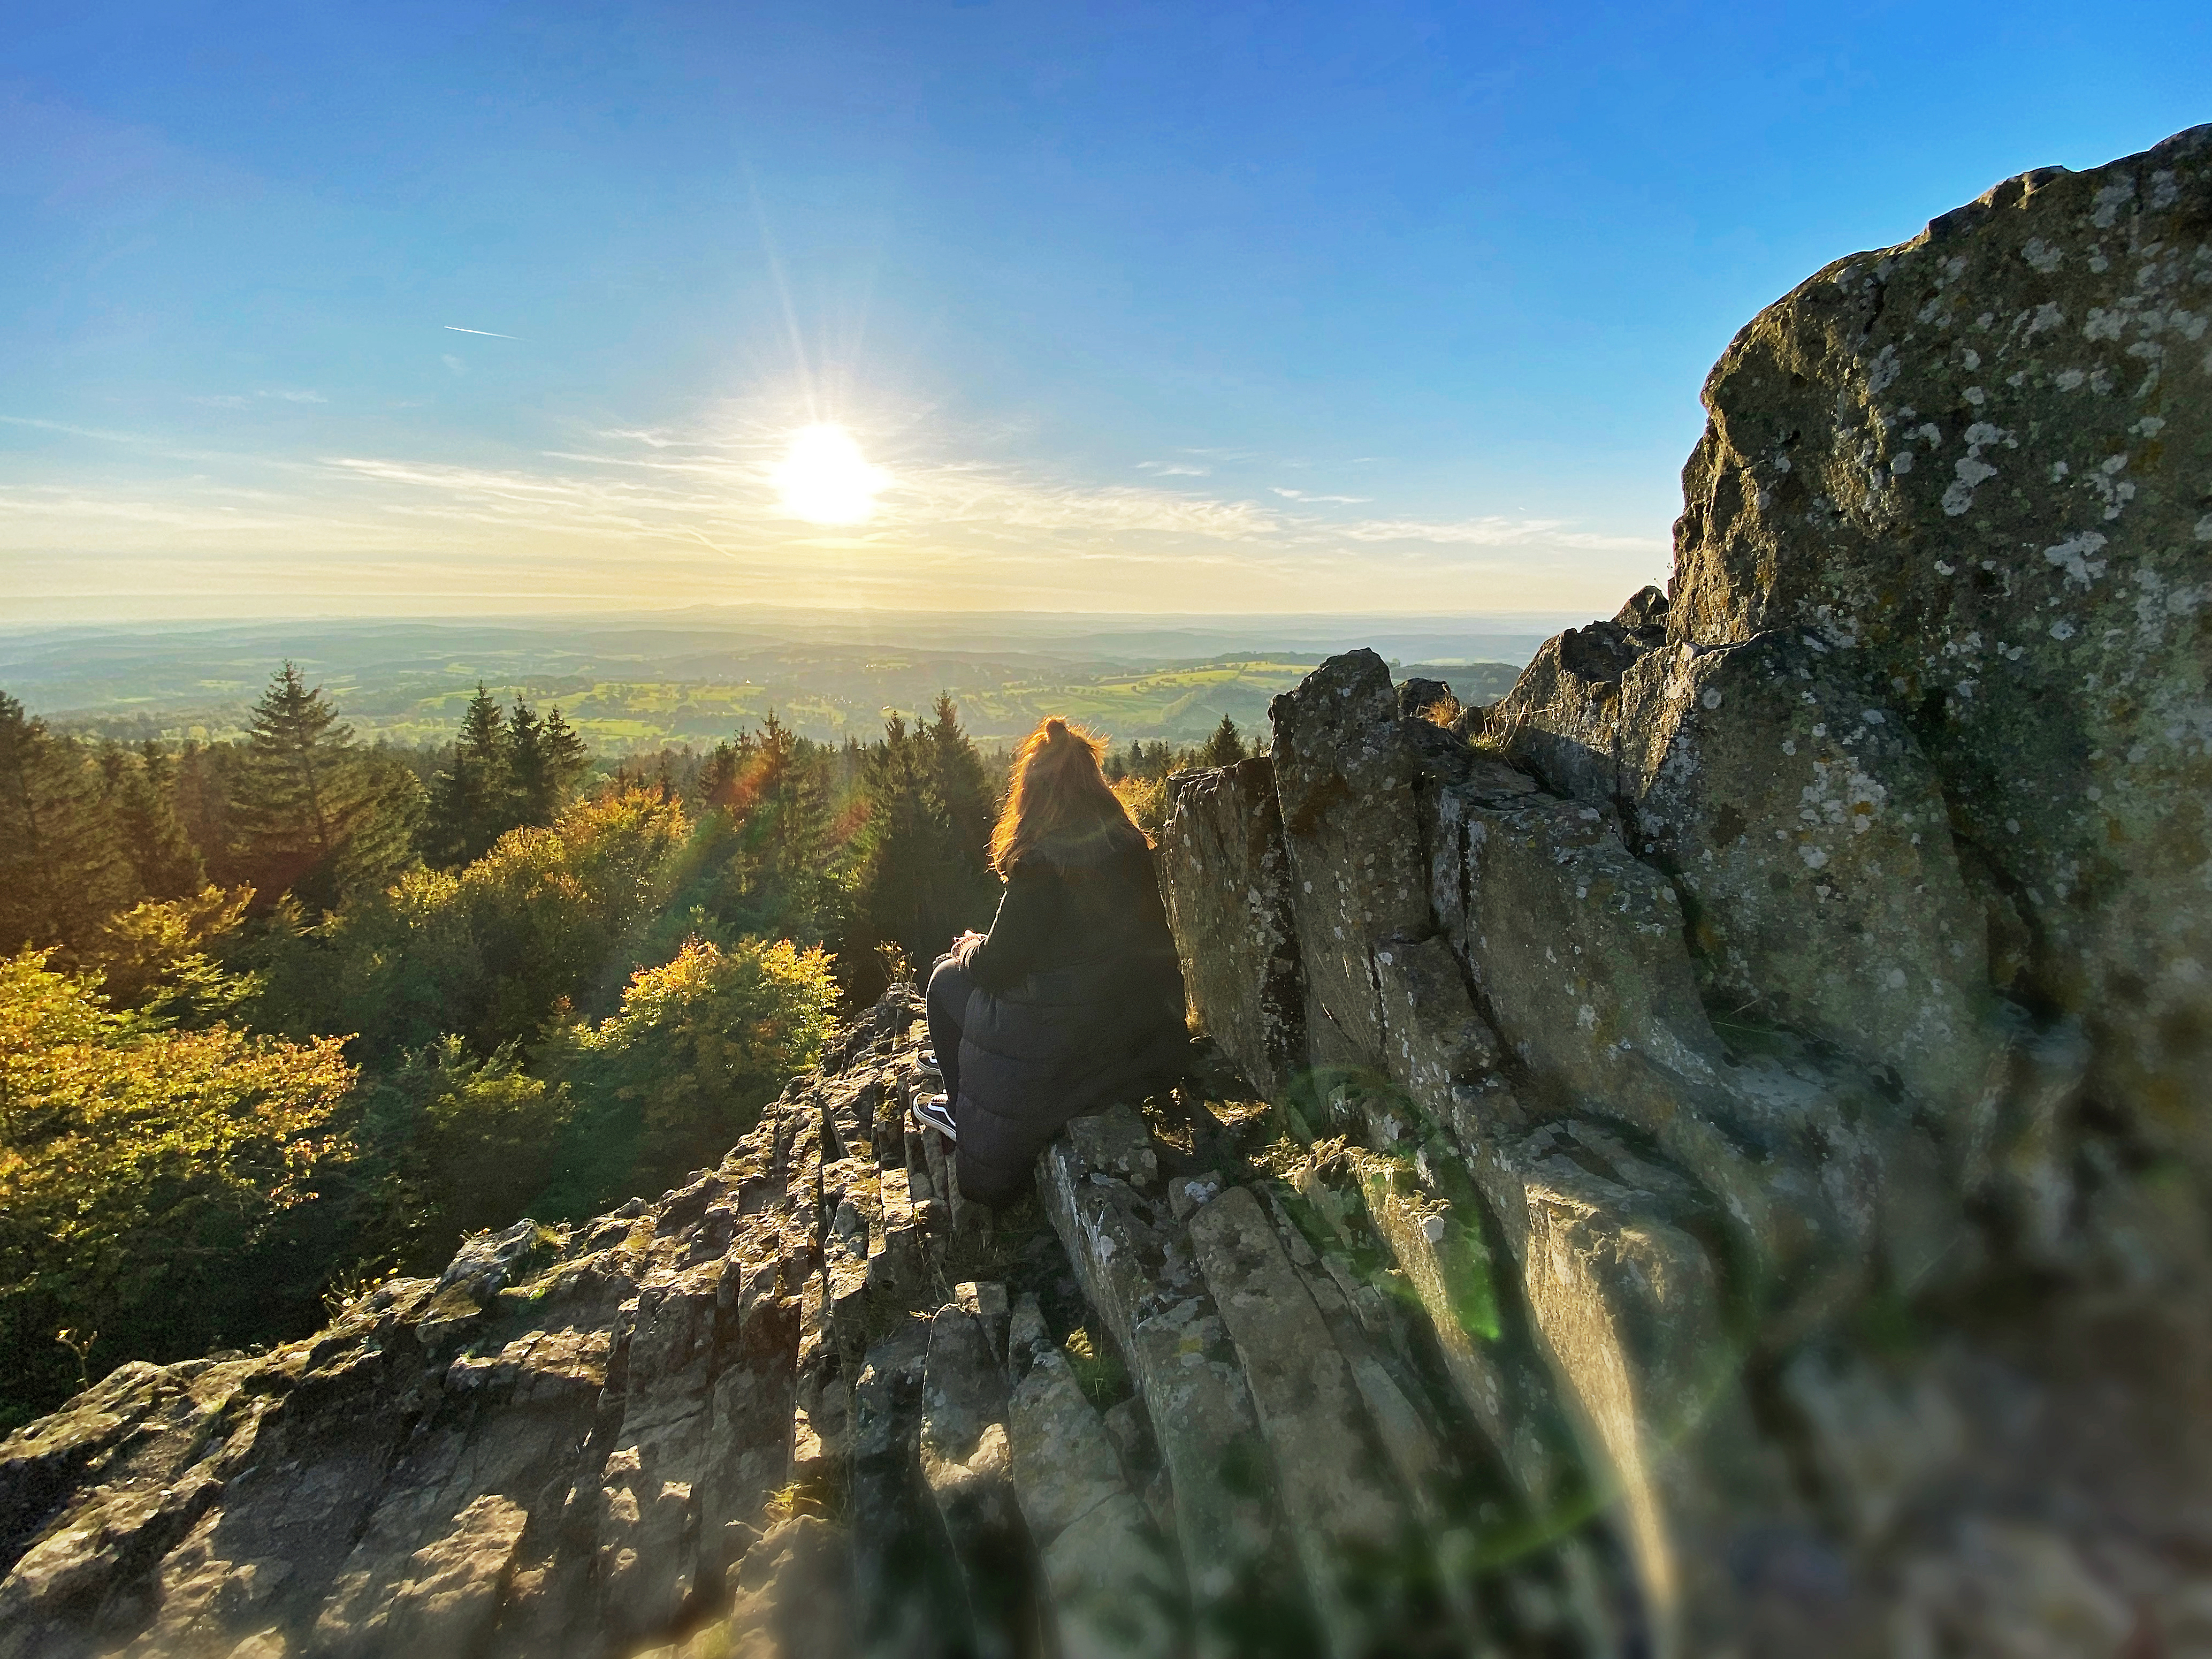 Der Blick des verweilenden Wanderers auf dem schroffen Basaltfelsen des Geotopes Bilstein im hessischen Vogelsberg geht weit über das geschwungene Land der Vulkanregion. Der Herbst hat das Laub des Waldes bunt gefärbt und die warmen Sonnestrahlen zaubern ein magisches Licht am strahlend blauen Himmel.